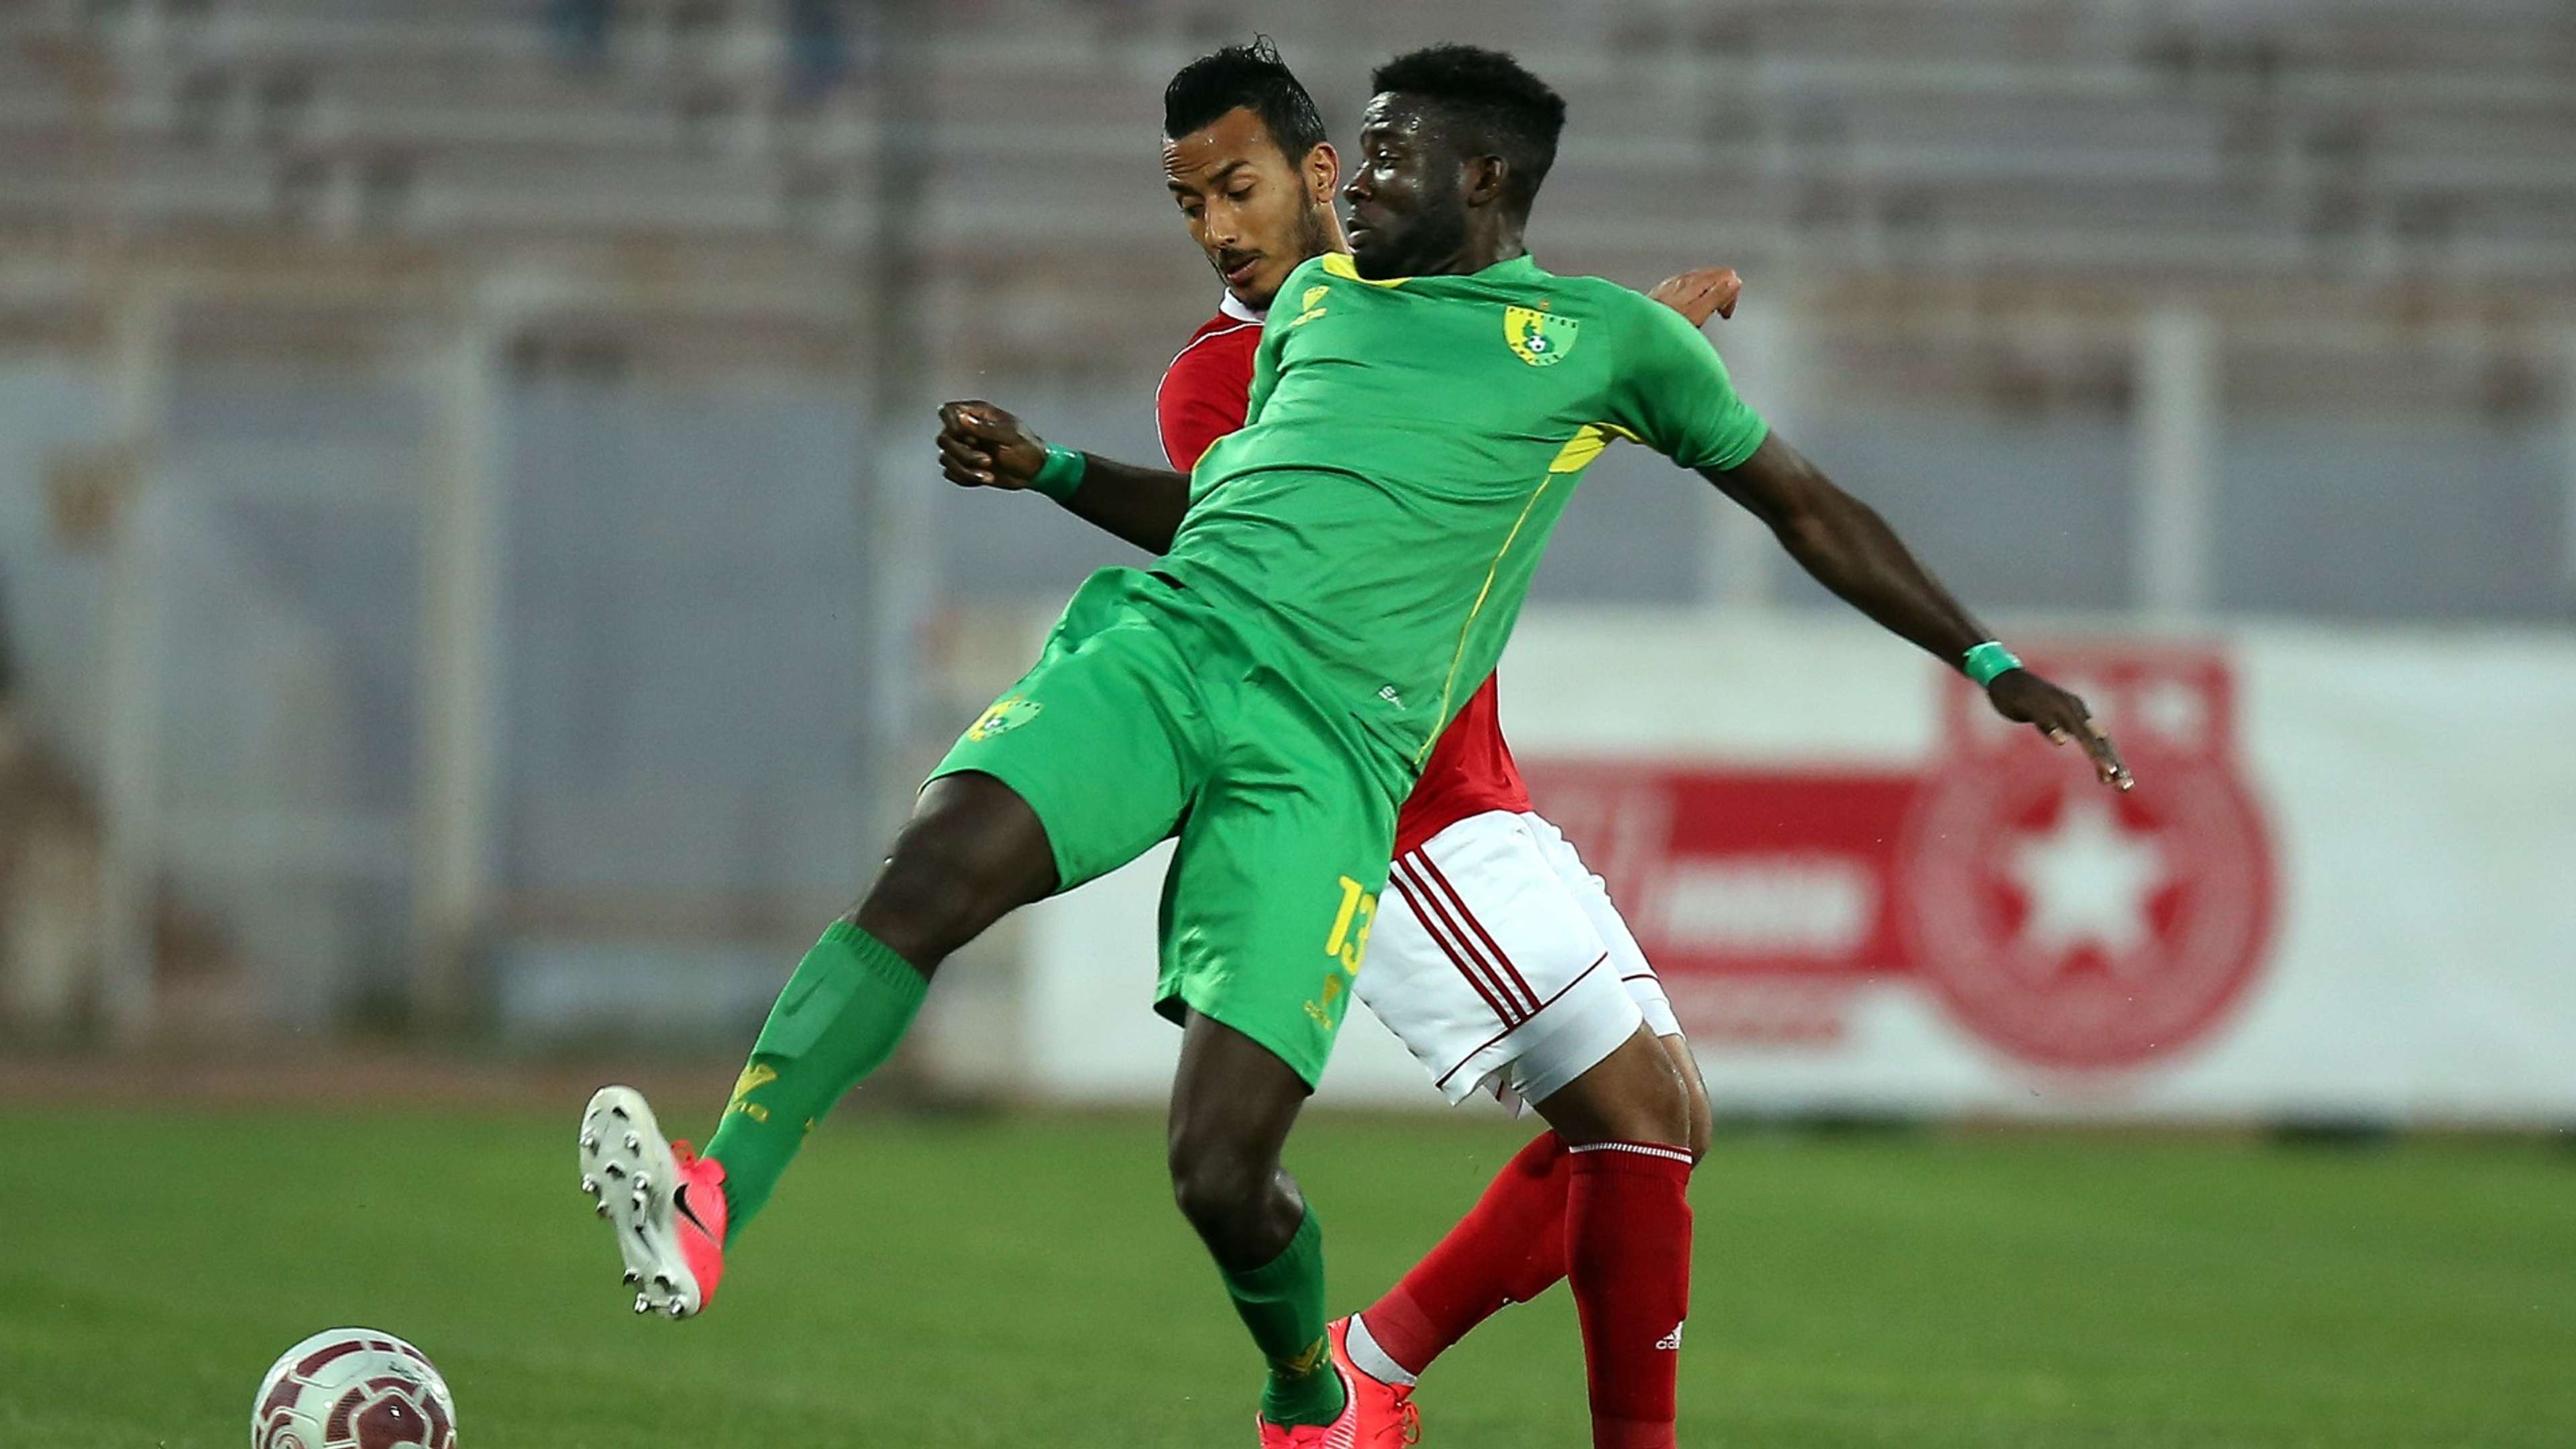 Raphael Ayagwa of Plateau United vs. Etoile du Sahel's Hamza Lahmar